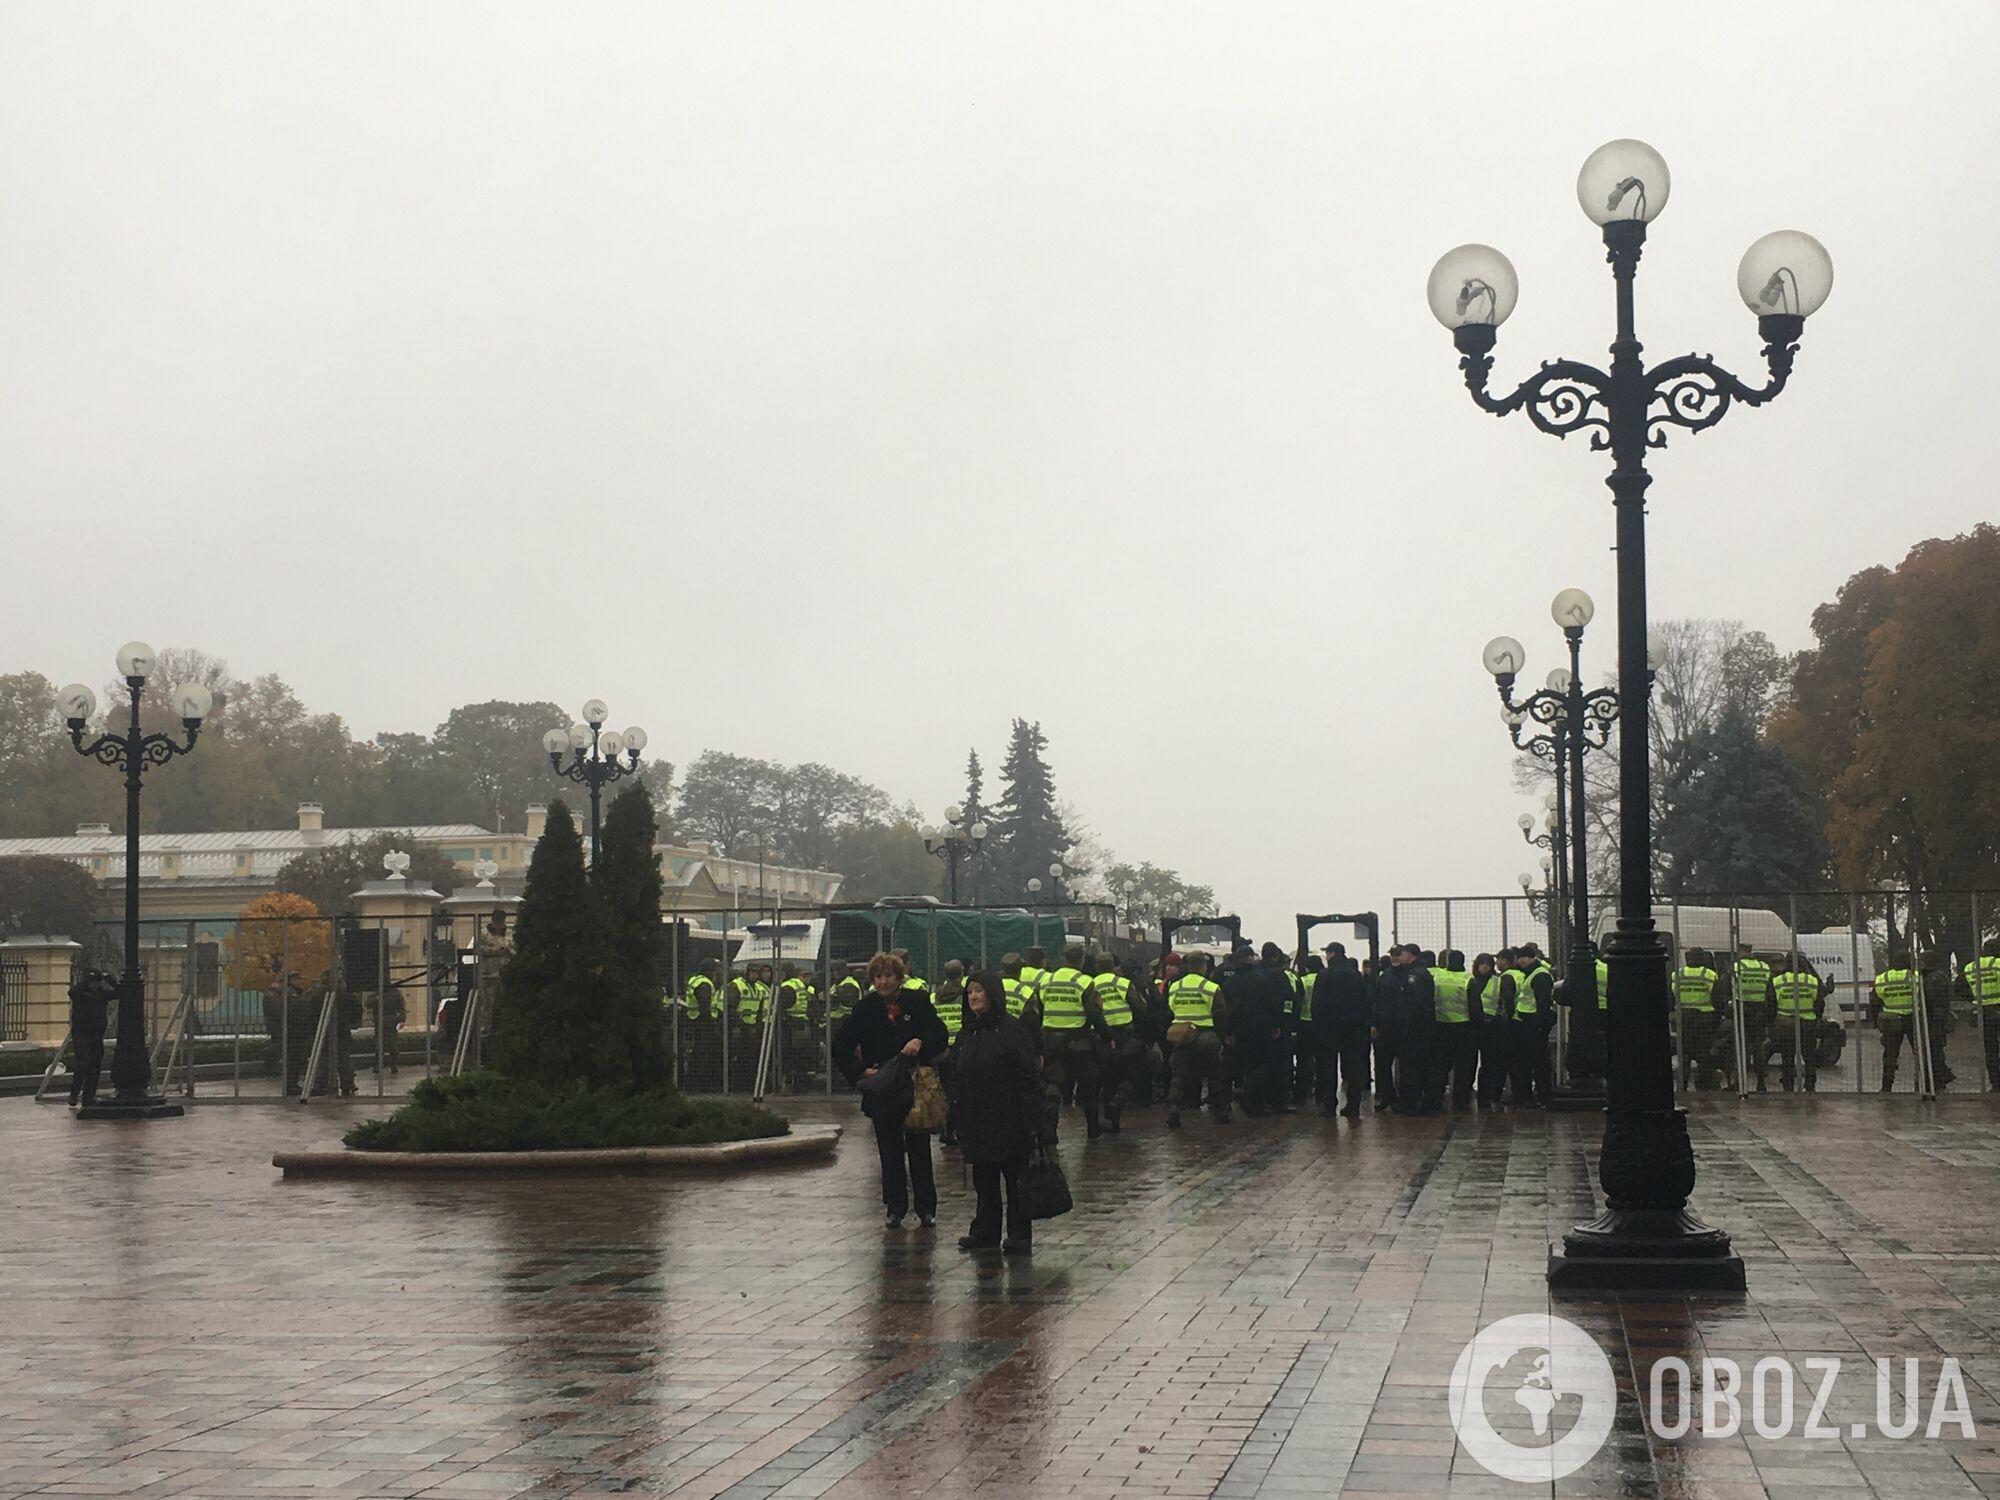 Митинг под Верховной Радой в Киеве: яркий фоторепортаж